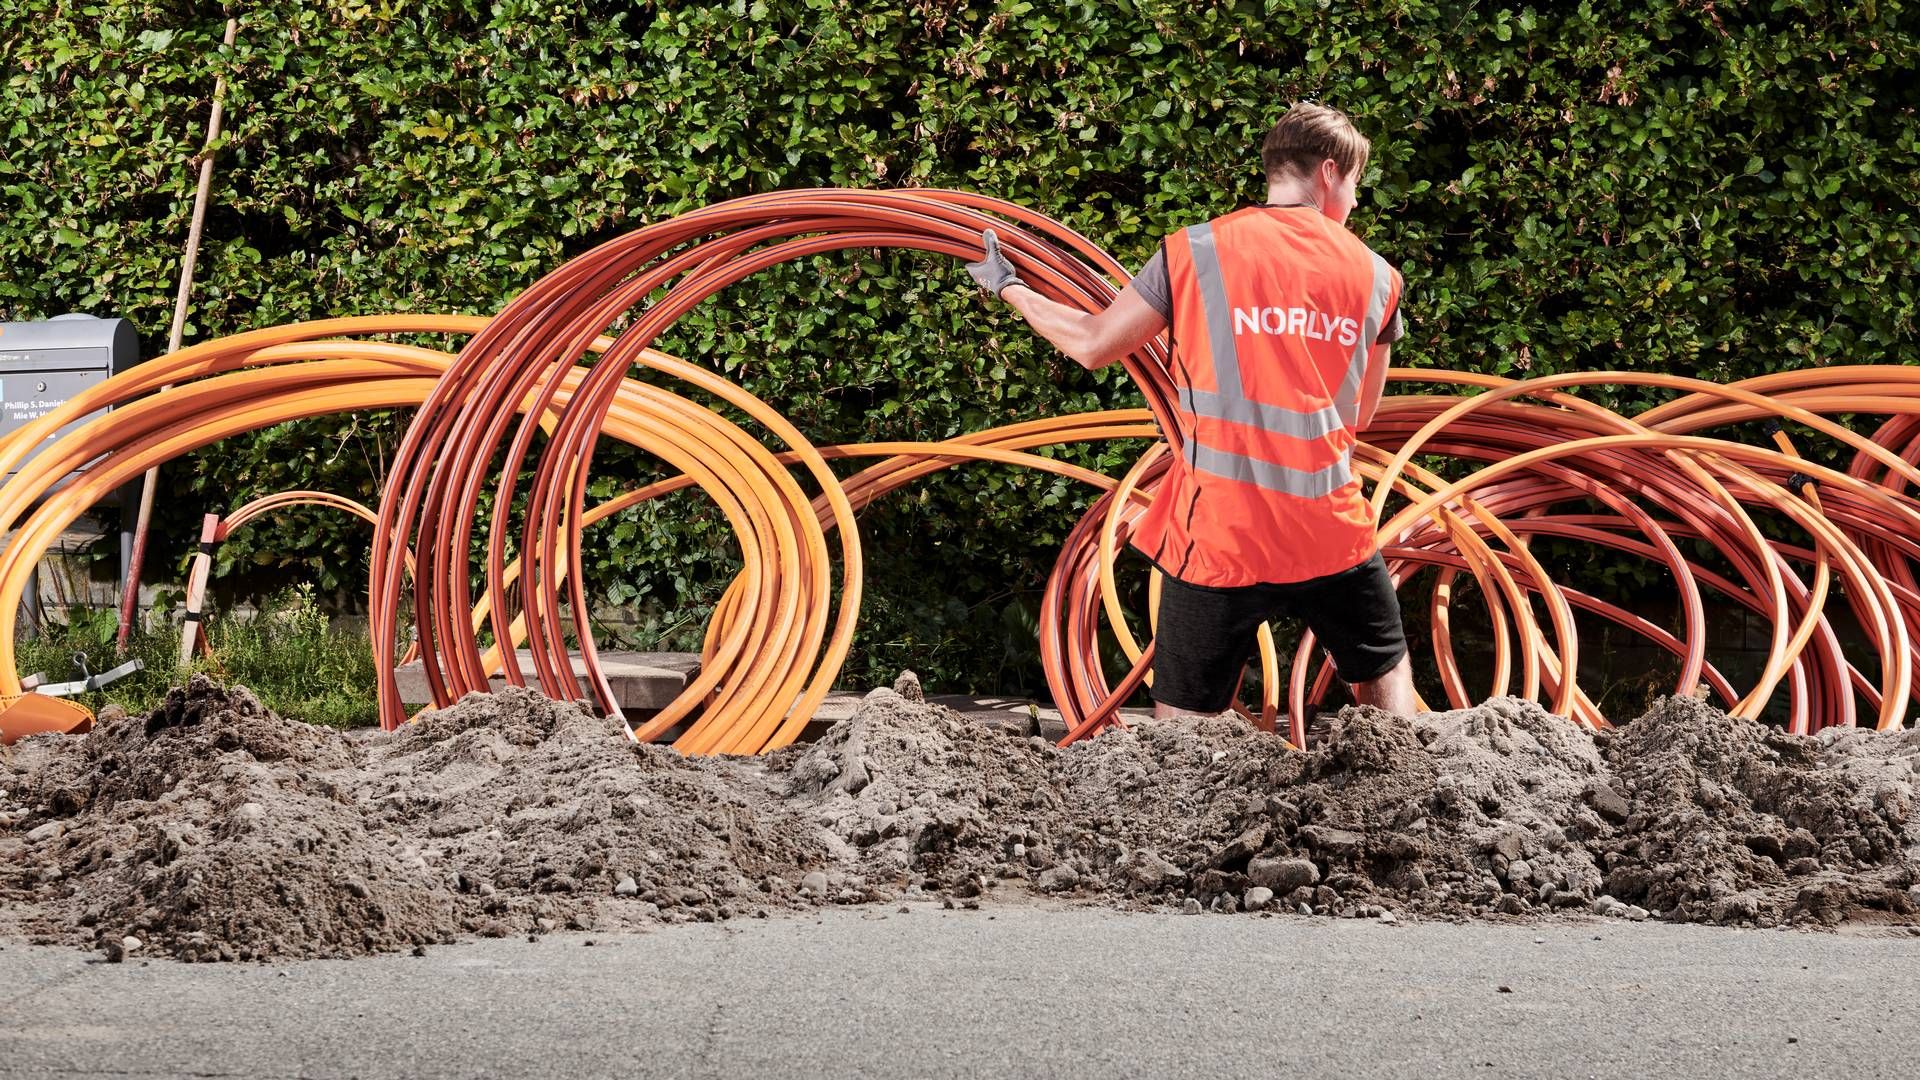 Norlys har investeret mere end 14 mia. kr. i deres fibernet og har nu rundet 400.000 fiberkunder. | Foto: Norlys/pr